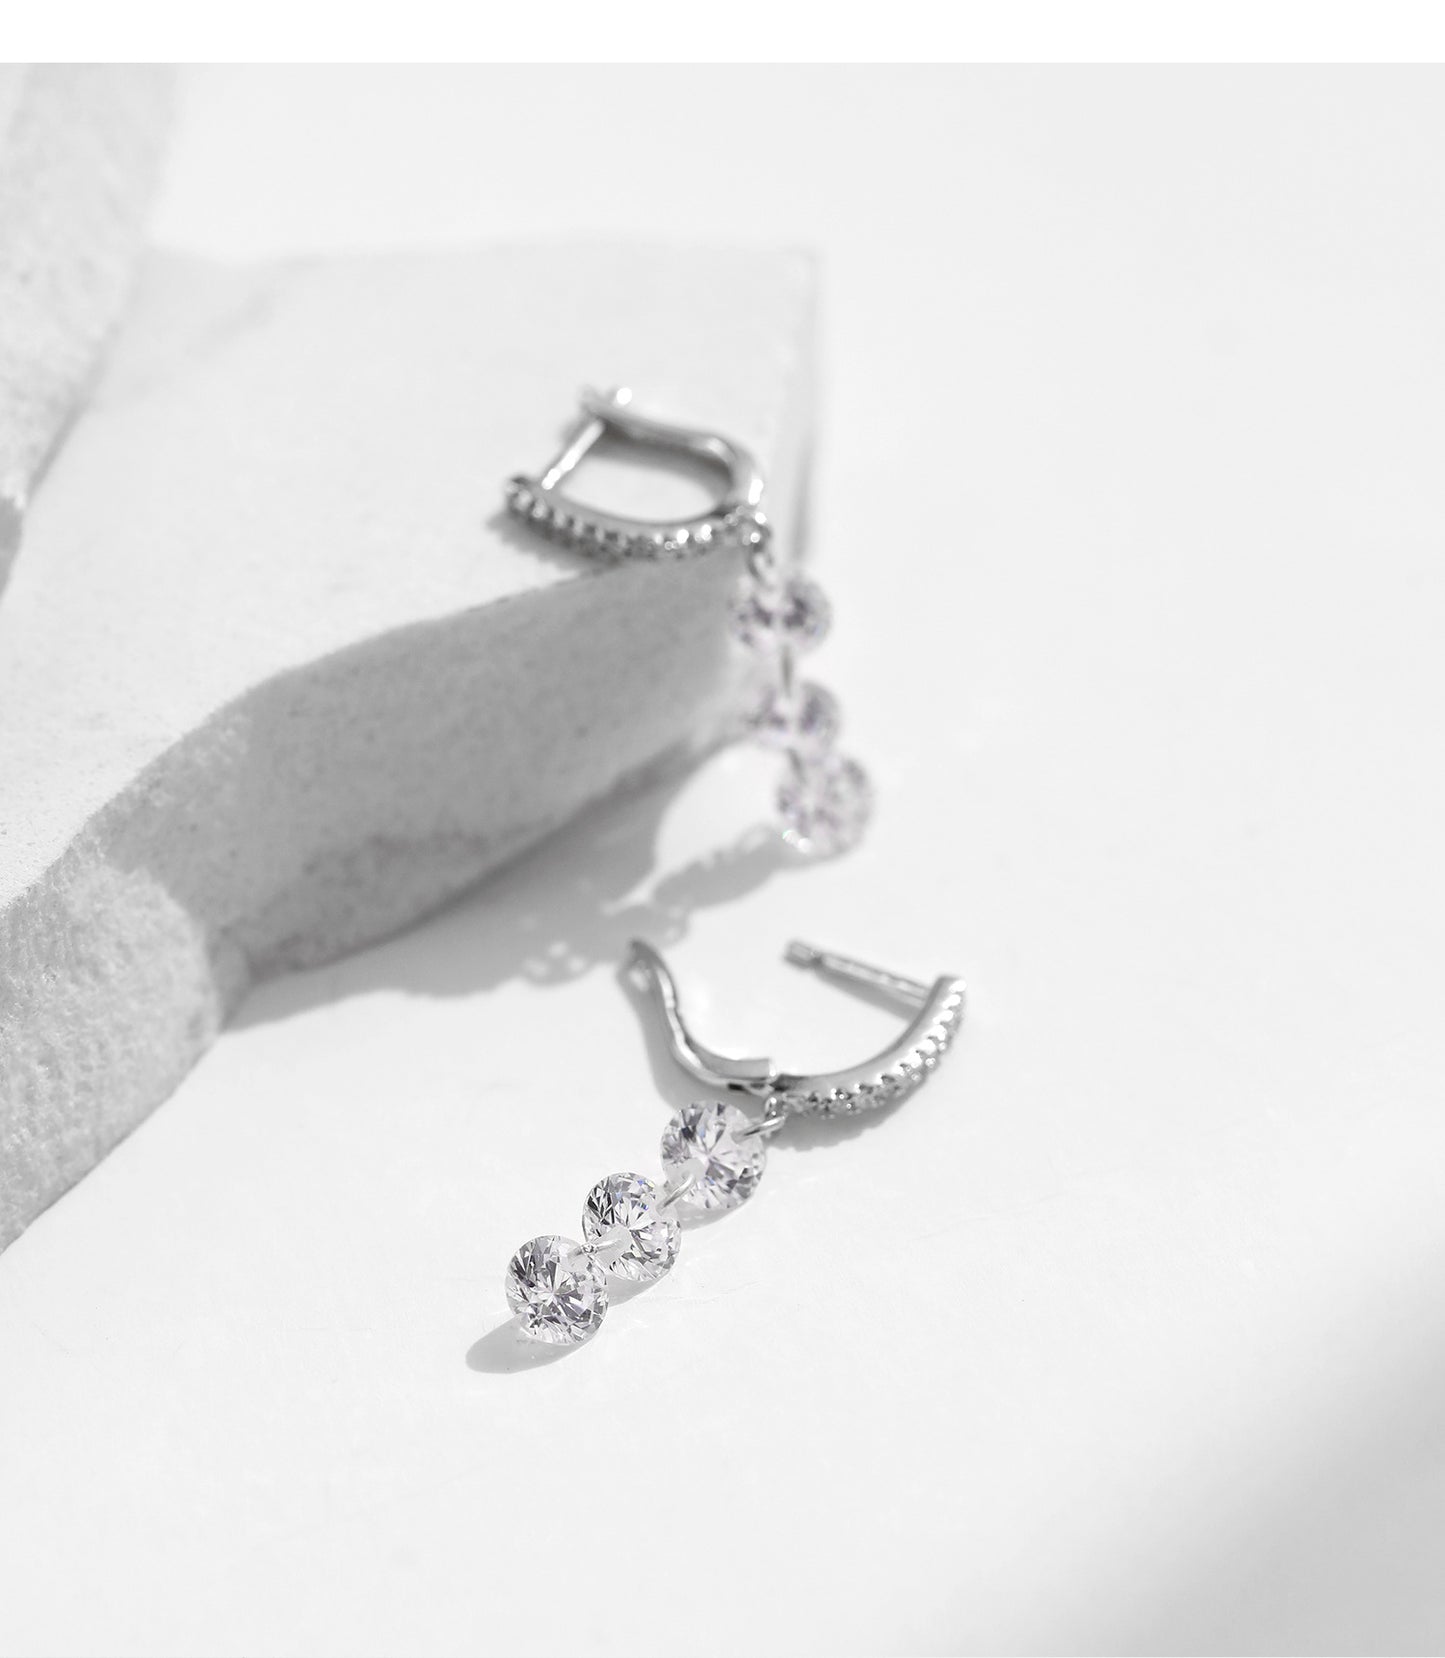 Luxury Sterling Silver Tassel Pendant Earrings with Zircon